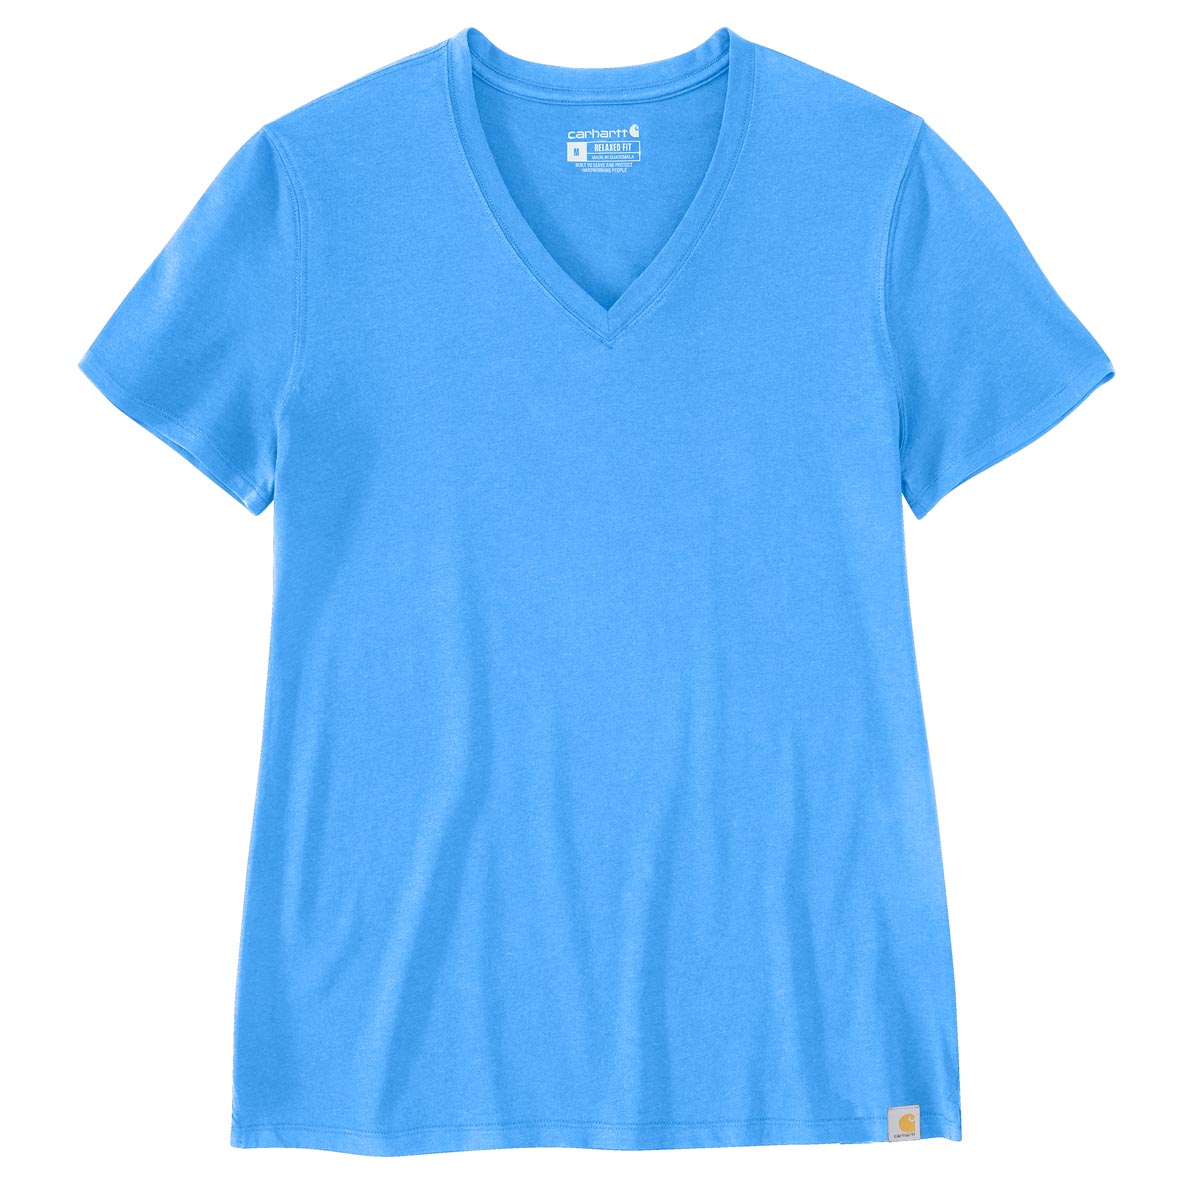 Carhartt Women's Relaxed Fit Lightweight Short-Sleeve V-Neck T-Shirt